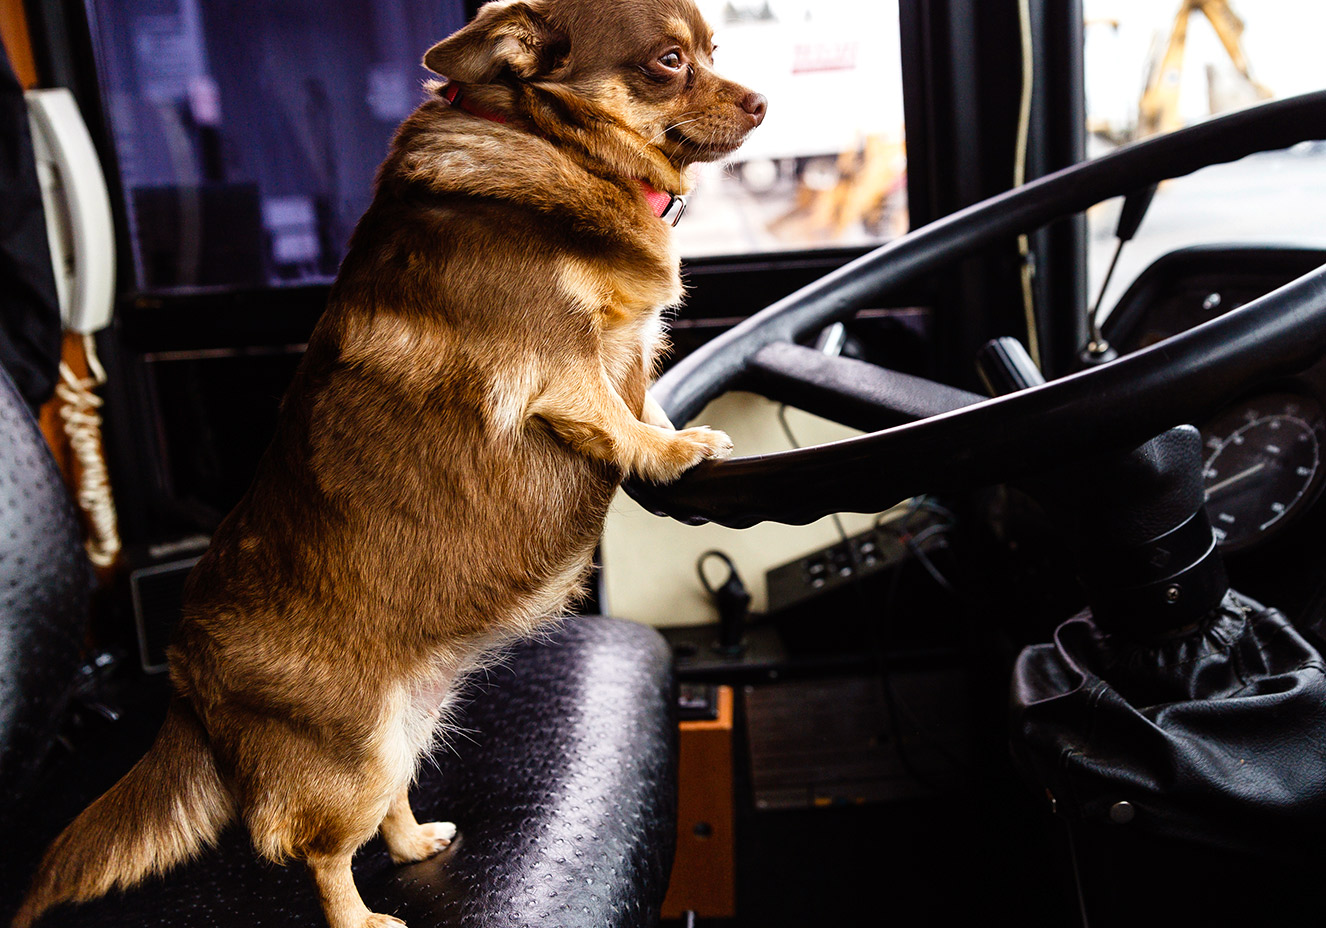 Tá liberado: os animais agora podem andar de ônibus em São Paulo | CLAUDIA